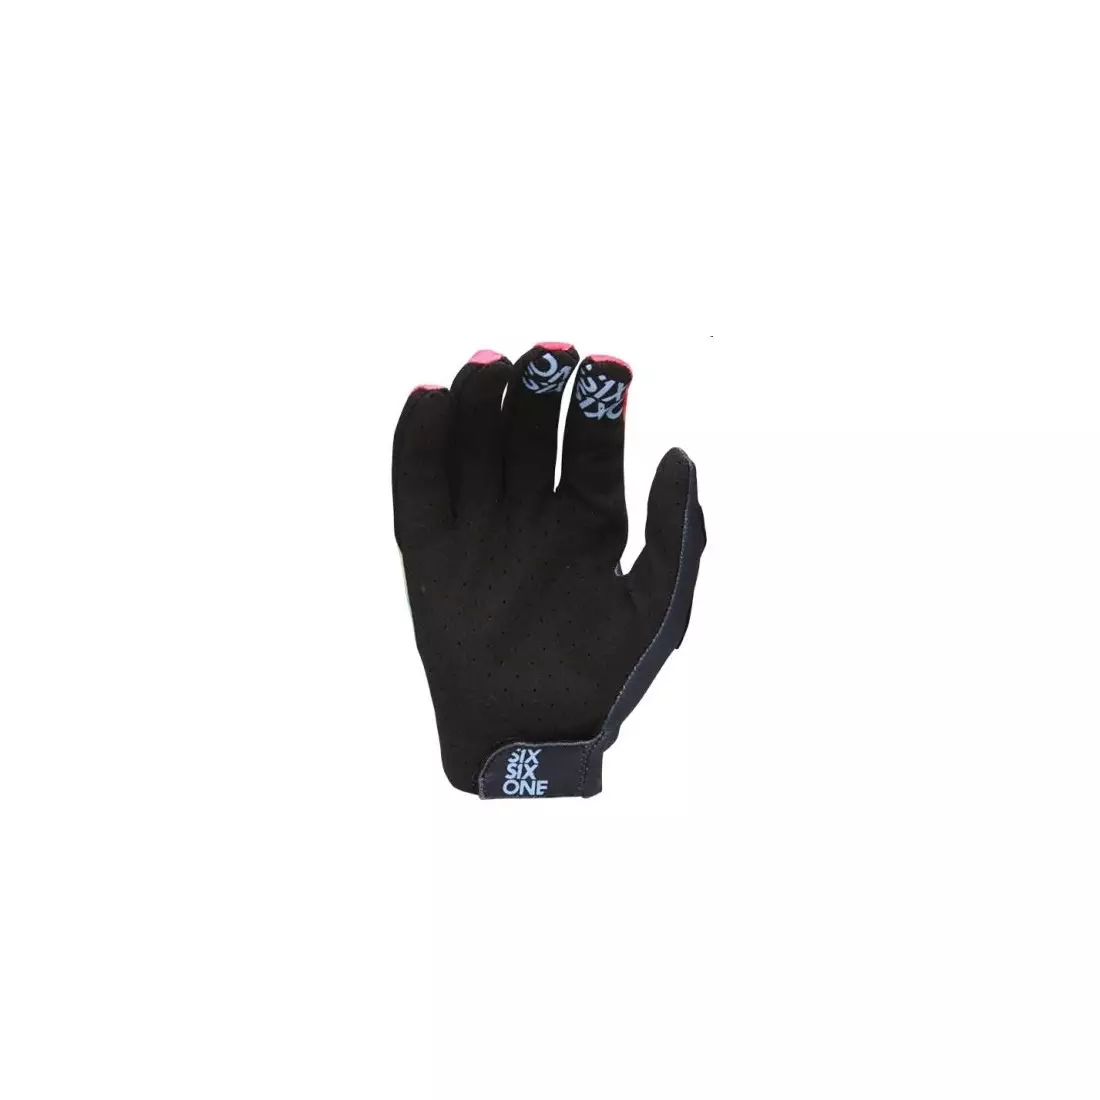 661 cycling gloves RAJI long finger tie dye